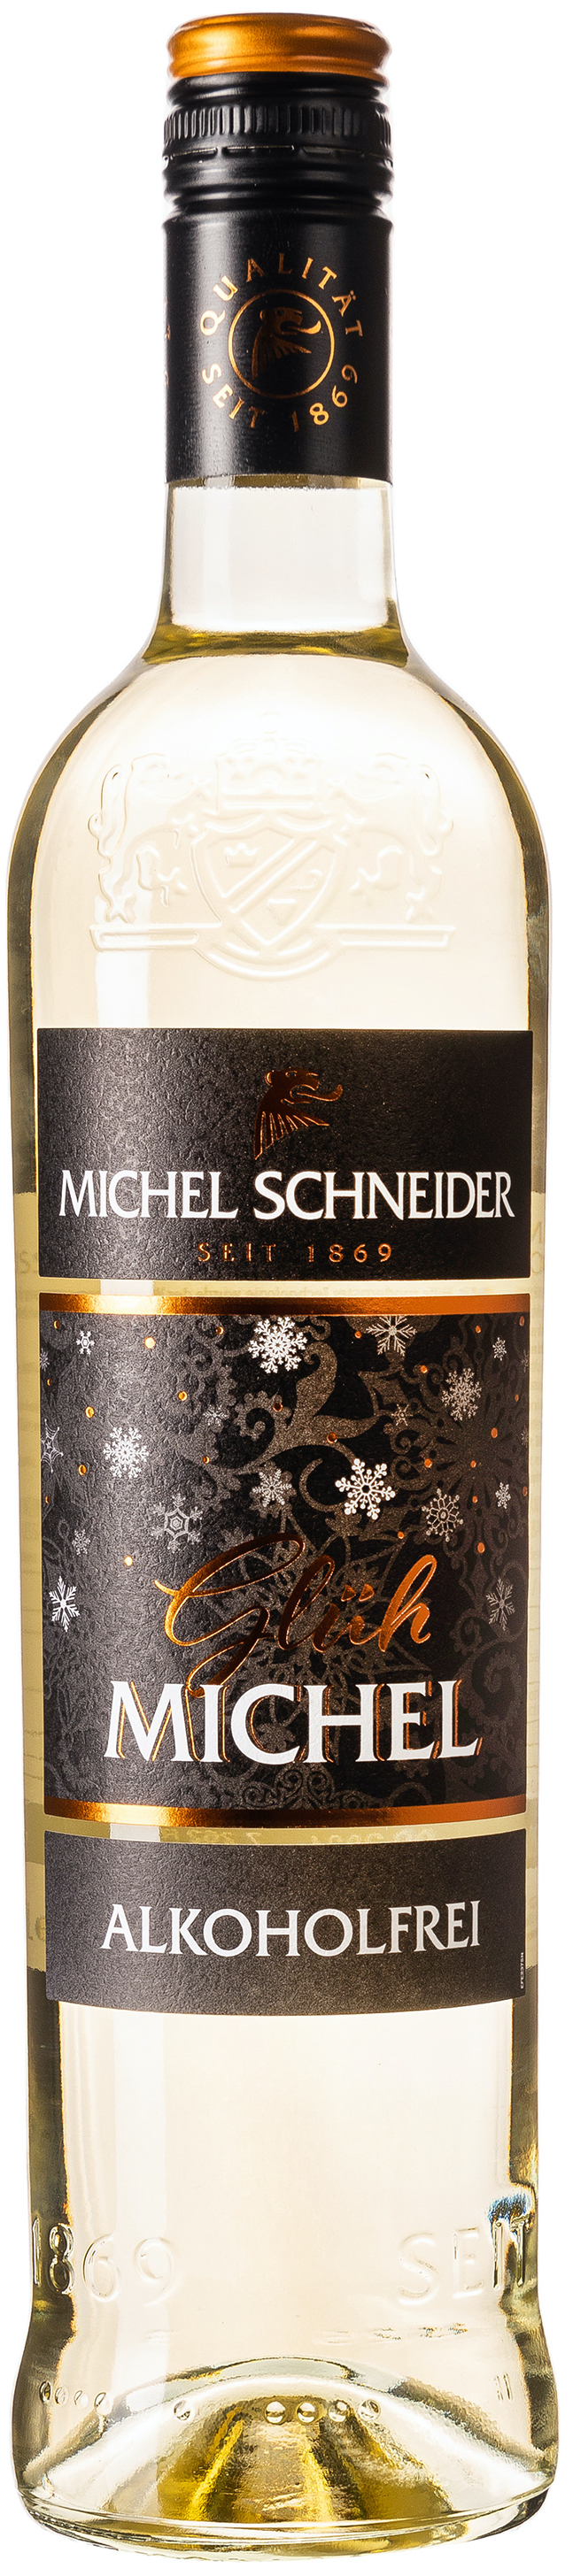 Michel Schneider Glüh Michel Weiss Alkoholfrei 0,5% vol. 0,75L 